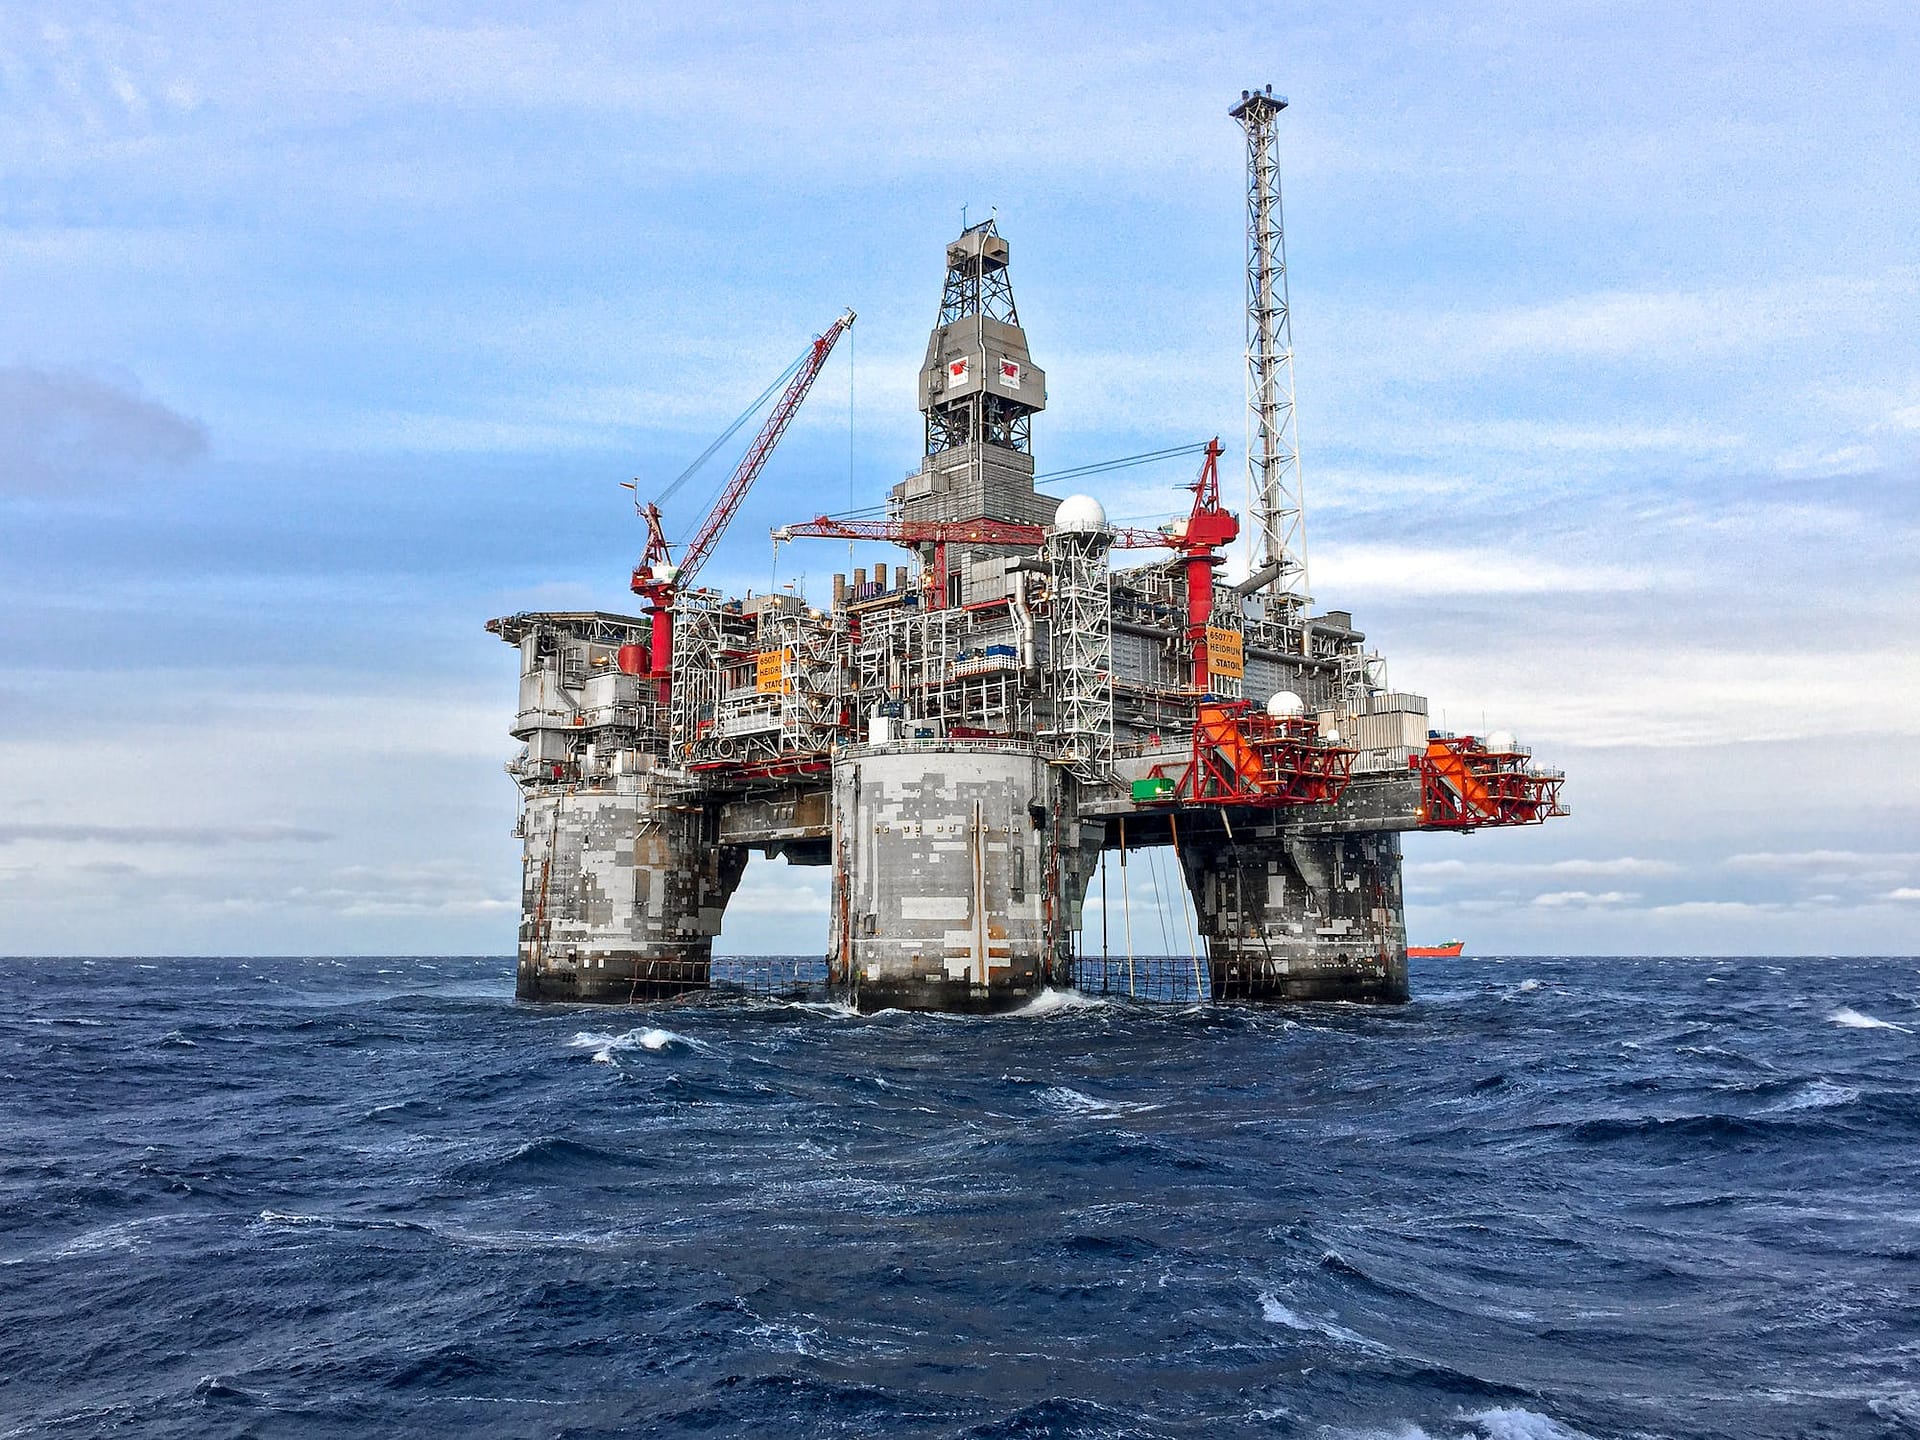 COP27: Floating Oil Platform